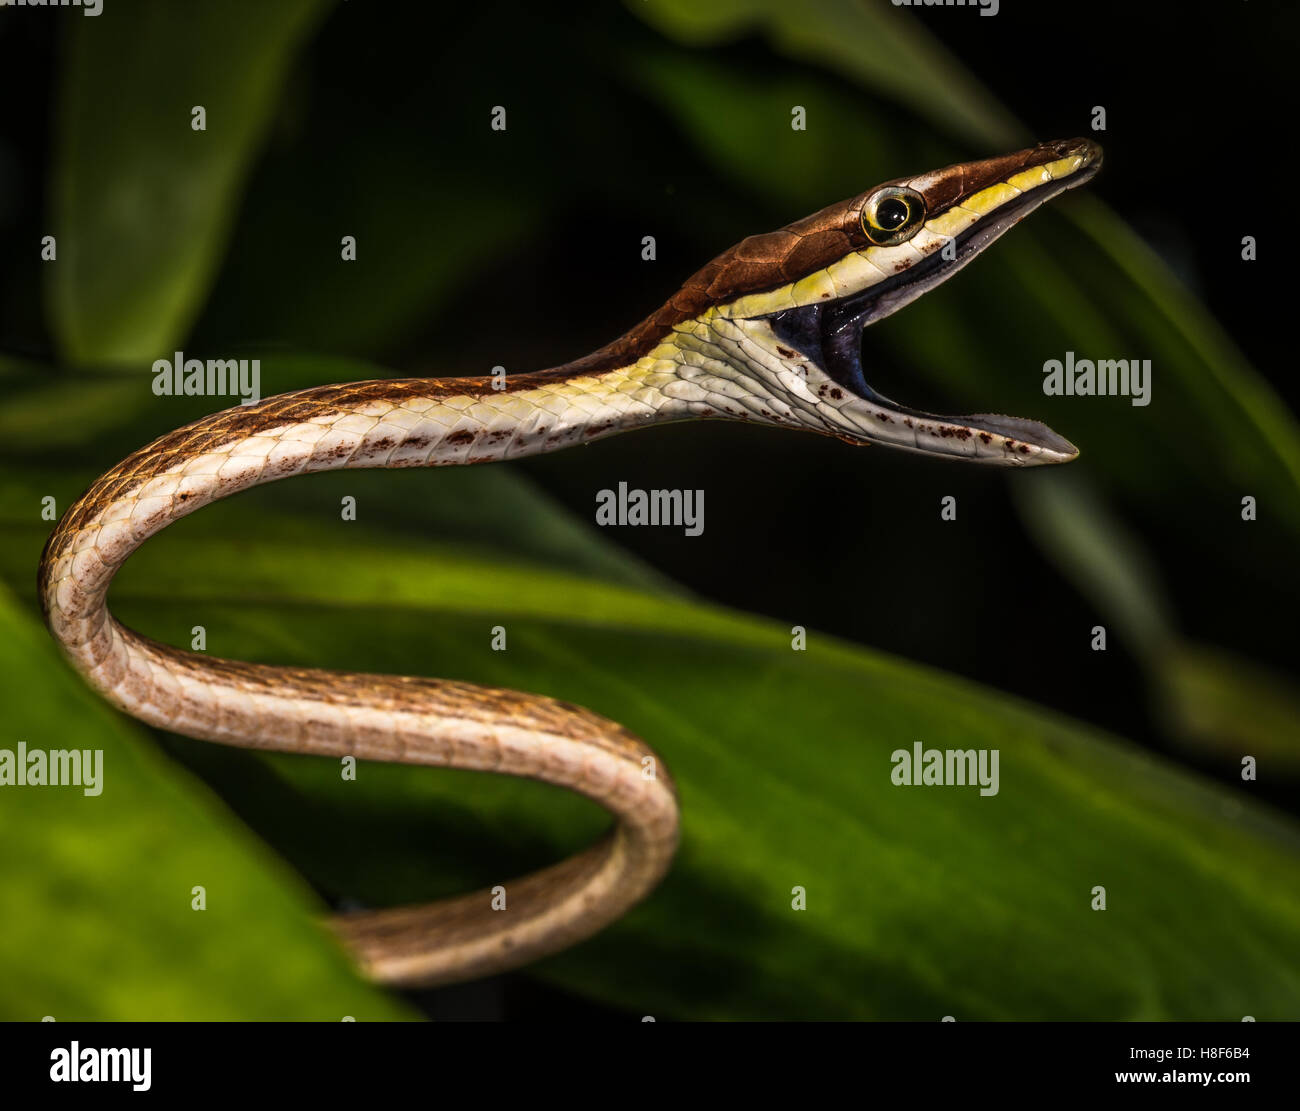 Oxybelis aeneus, communément connue sous le nom de serpent de vigne mexicaine ou brun, serpent de vigne est une espèce de serpents colubridae Banque D'Images